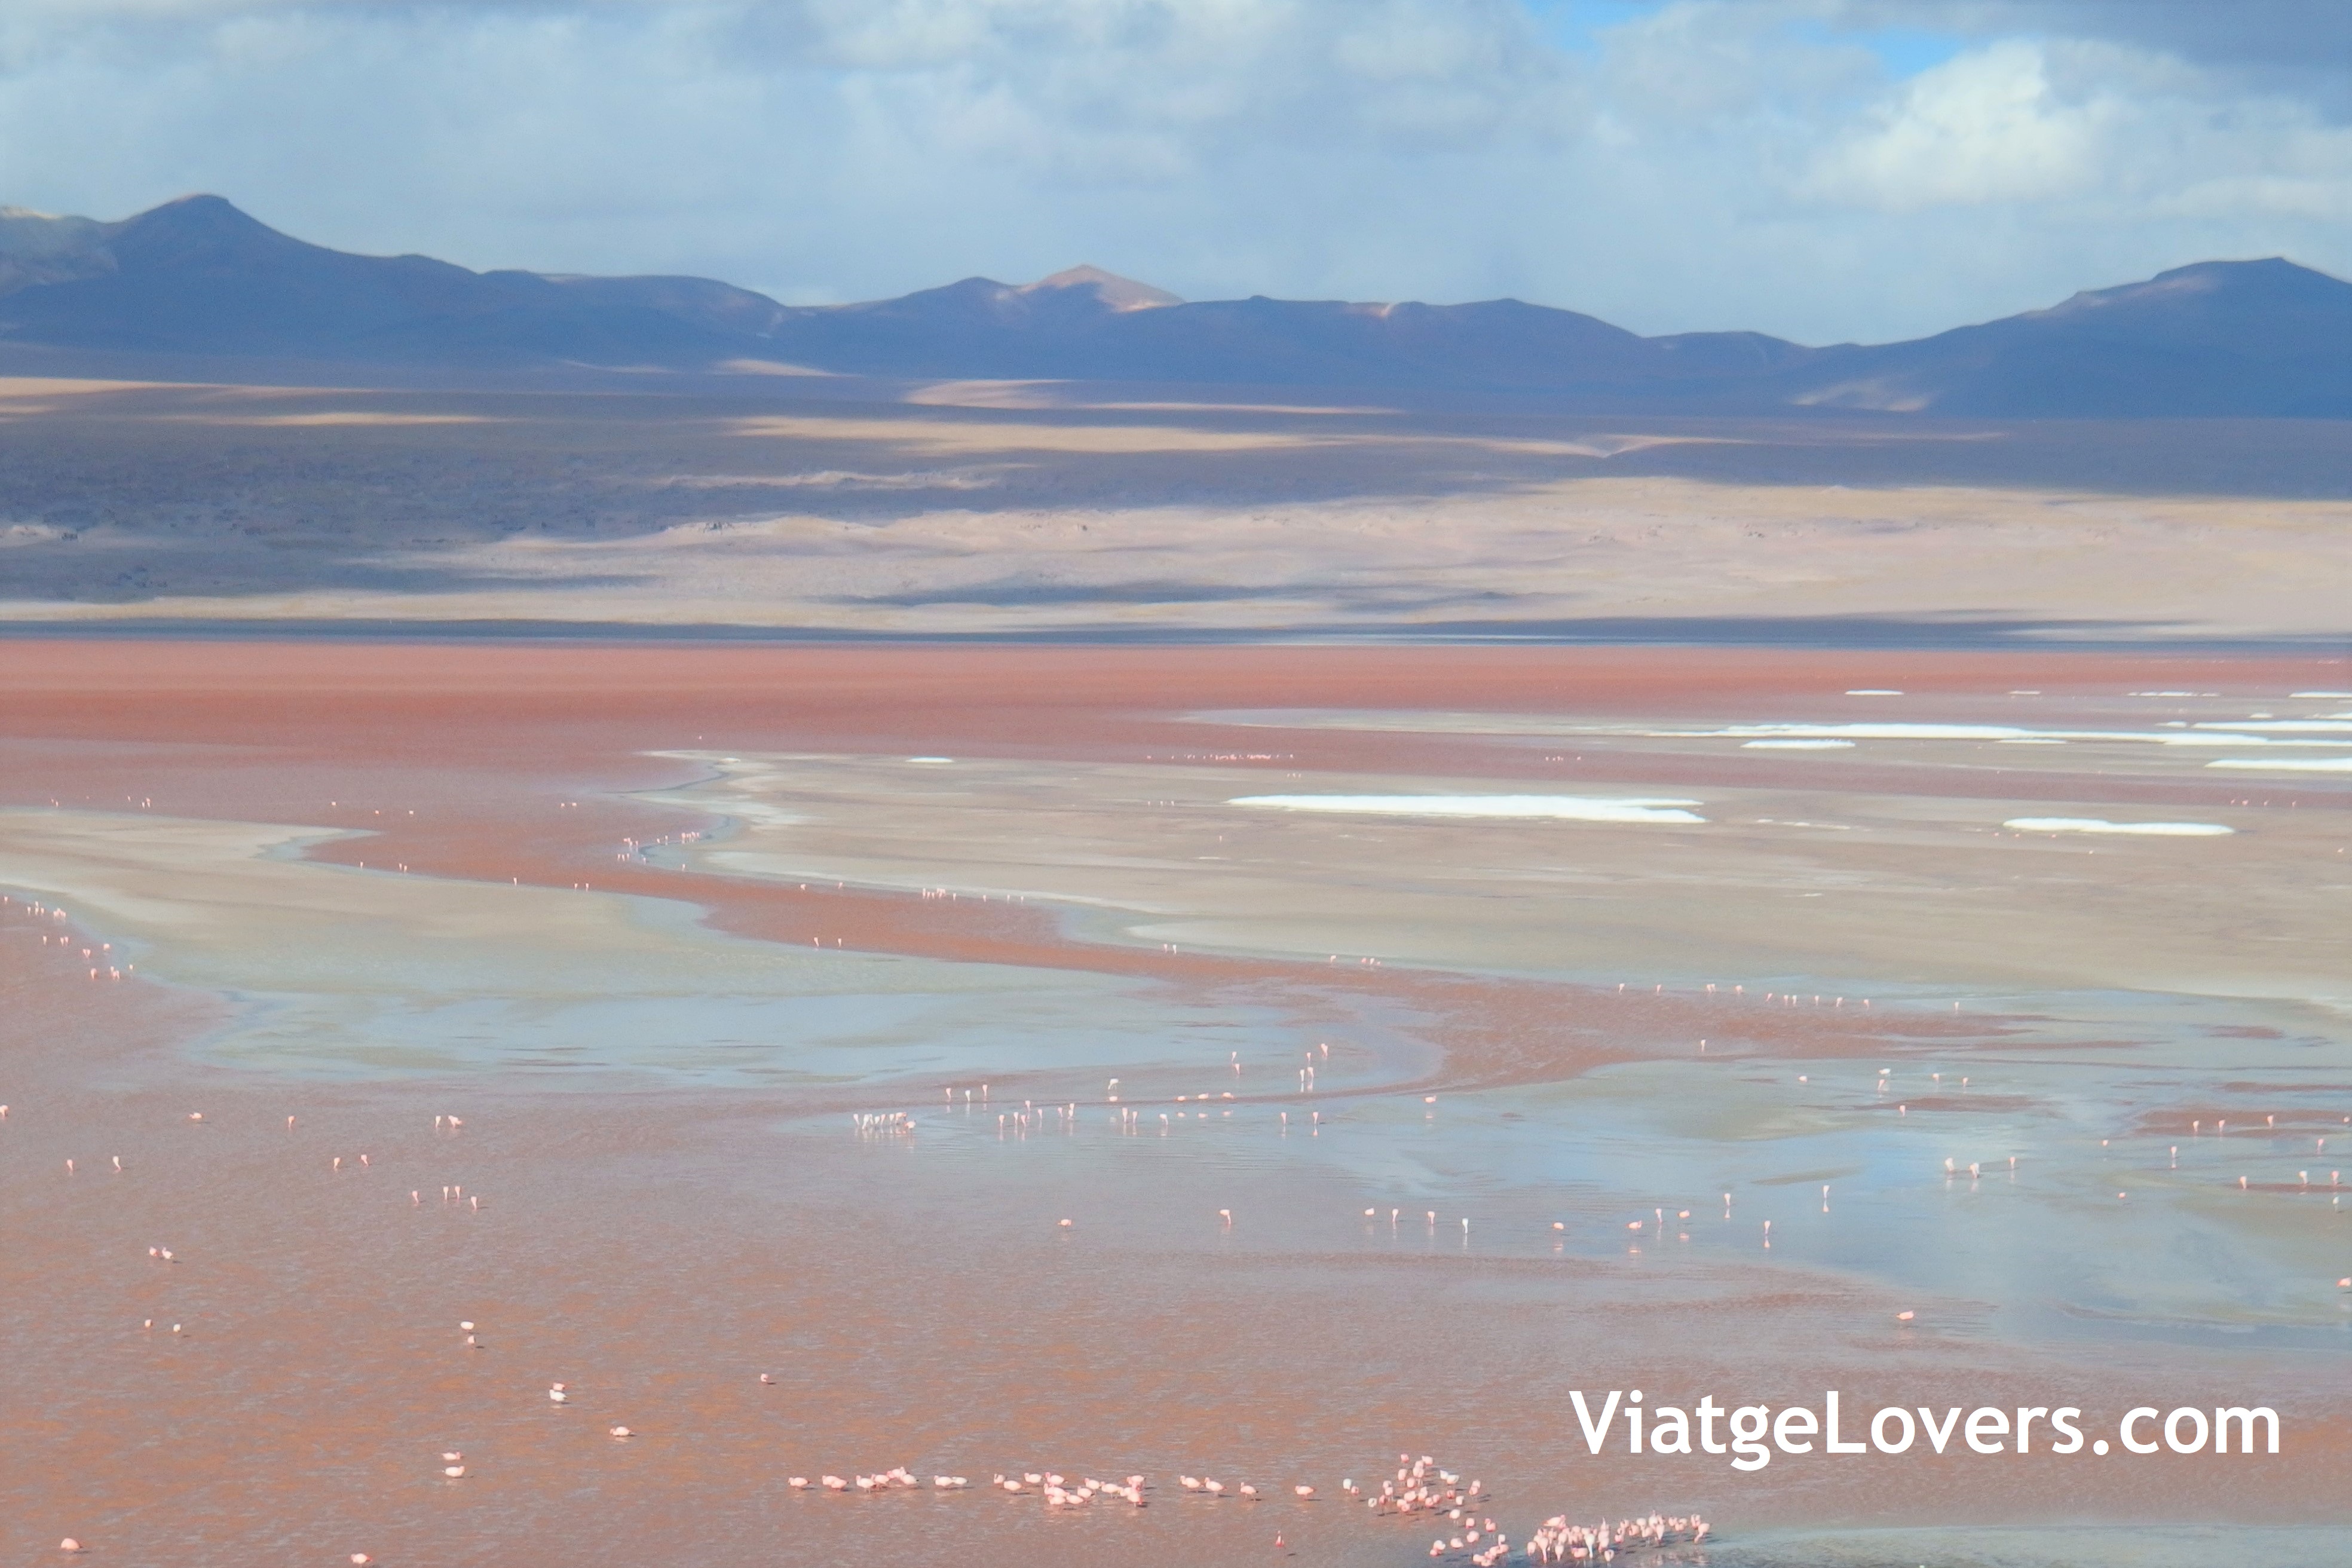 Ruta por el desierto de Atacama -ViatgeLovers.com